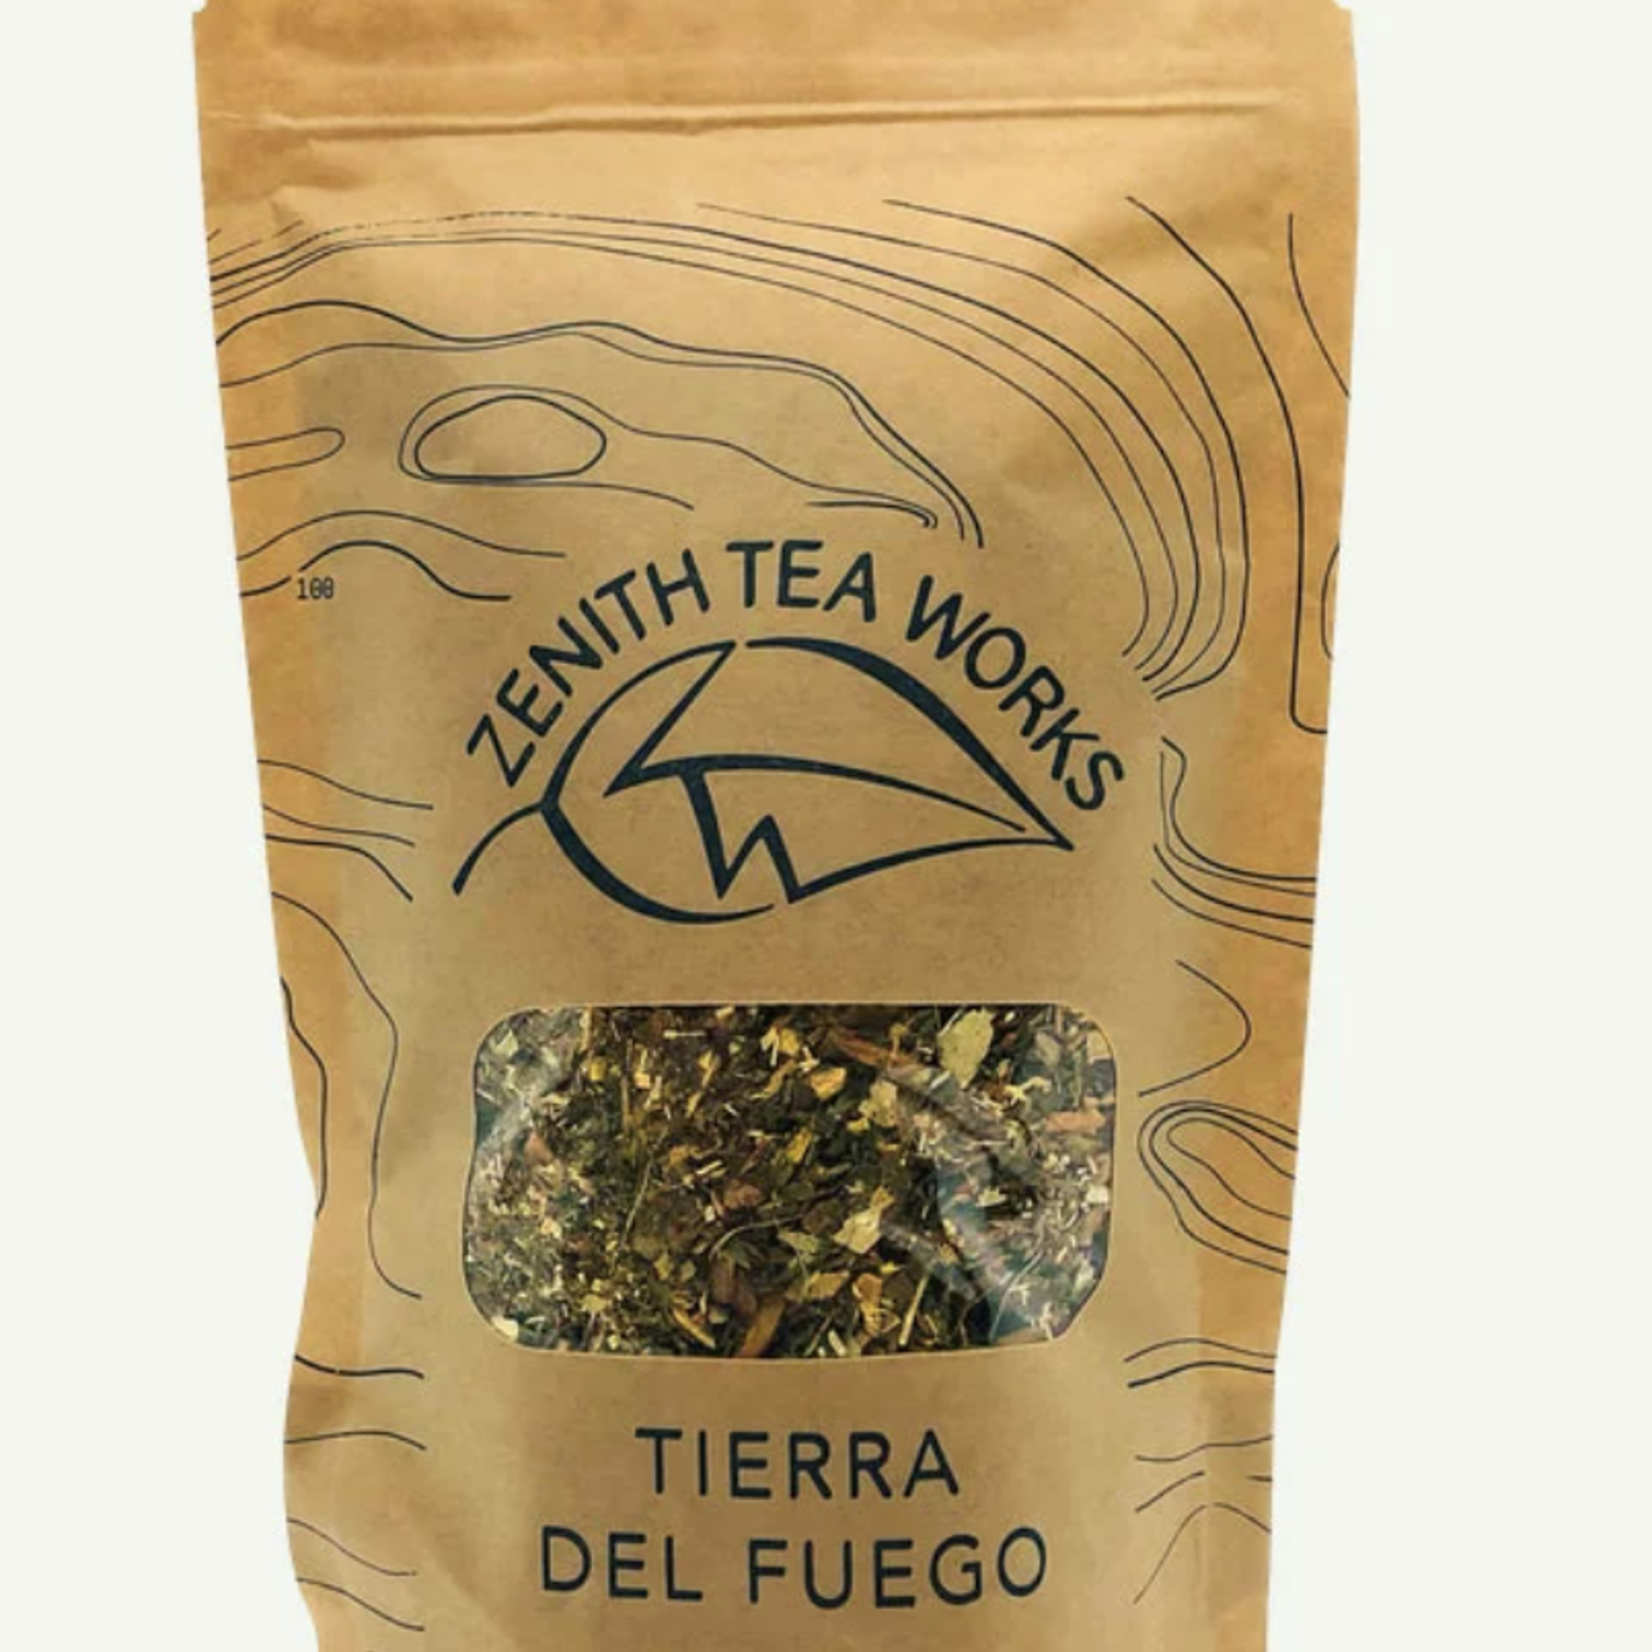 Zenith Tea Works Tierra Del Fuego, Herbal Tea